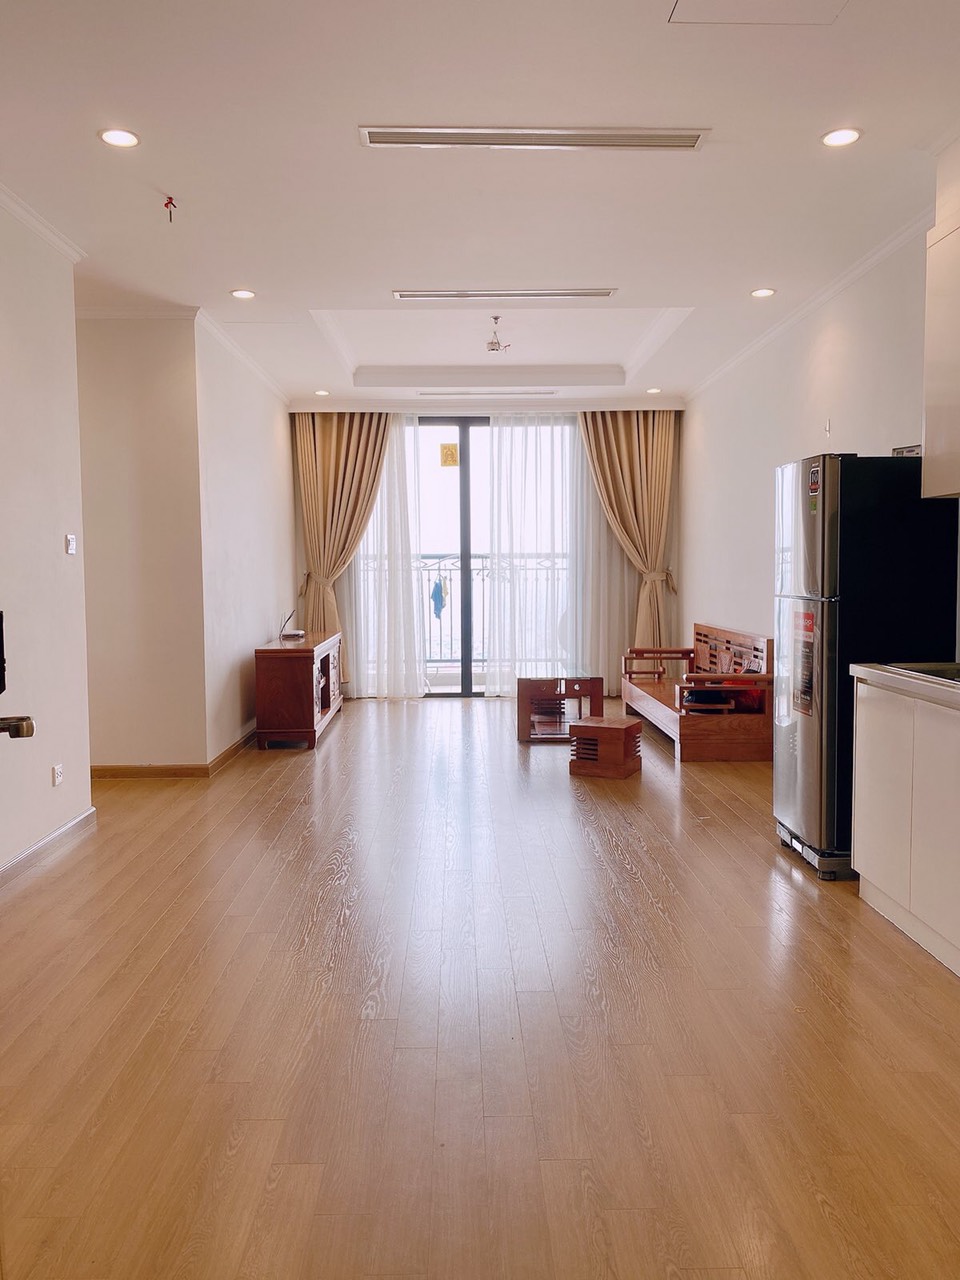 Bán căn hộ 2 phòng ngủ Royal City đẹp nhất tòa R6 S83m2, ban công ĐÔNG NAM.